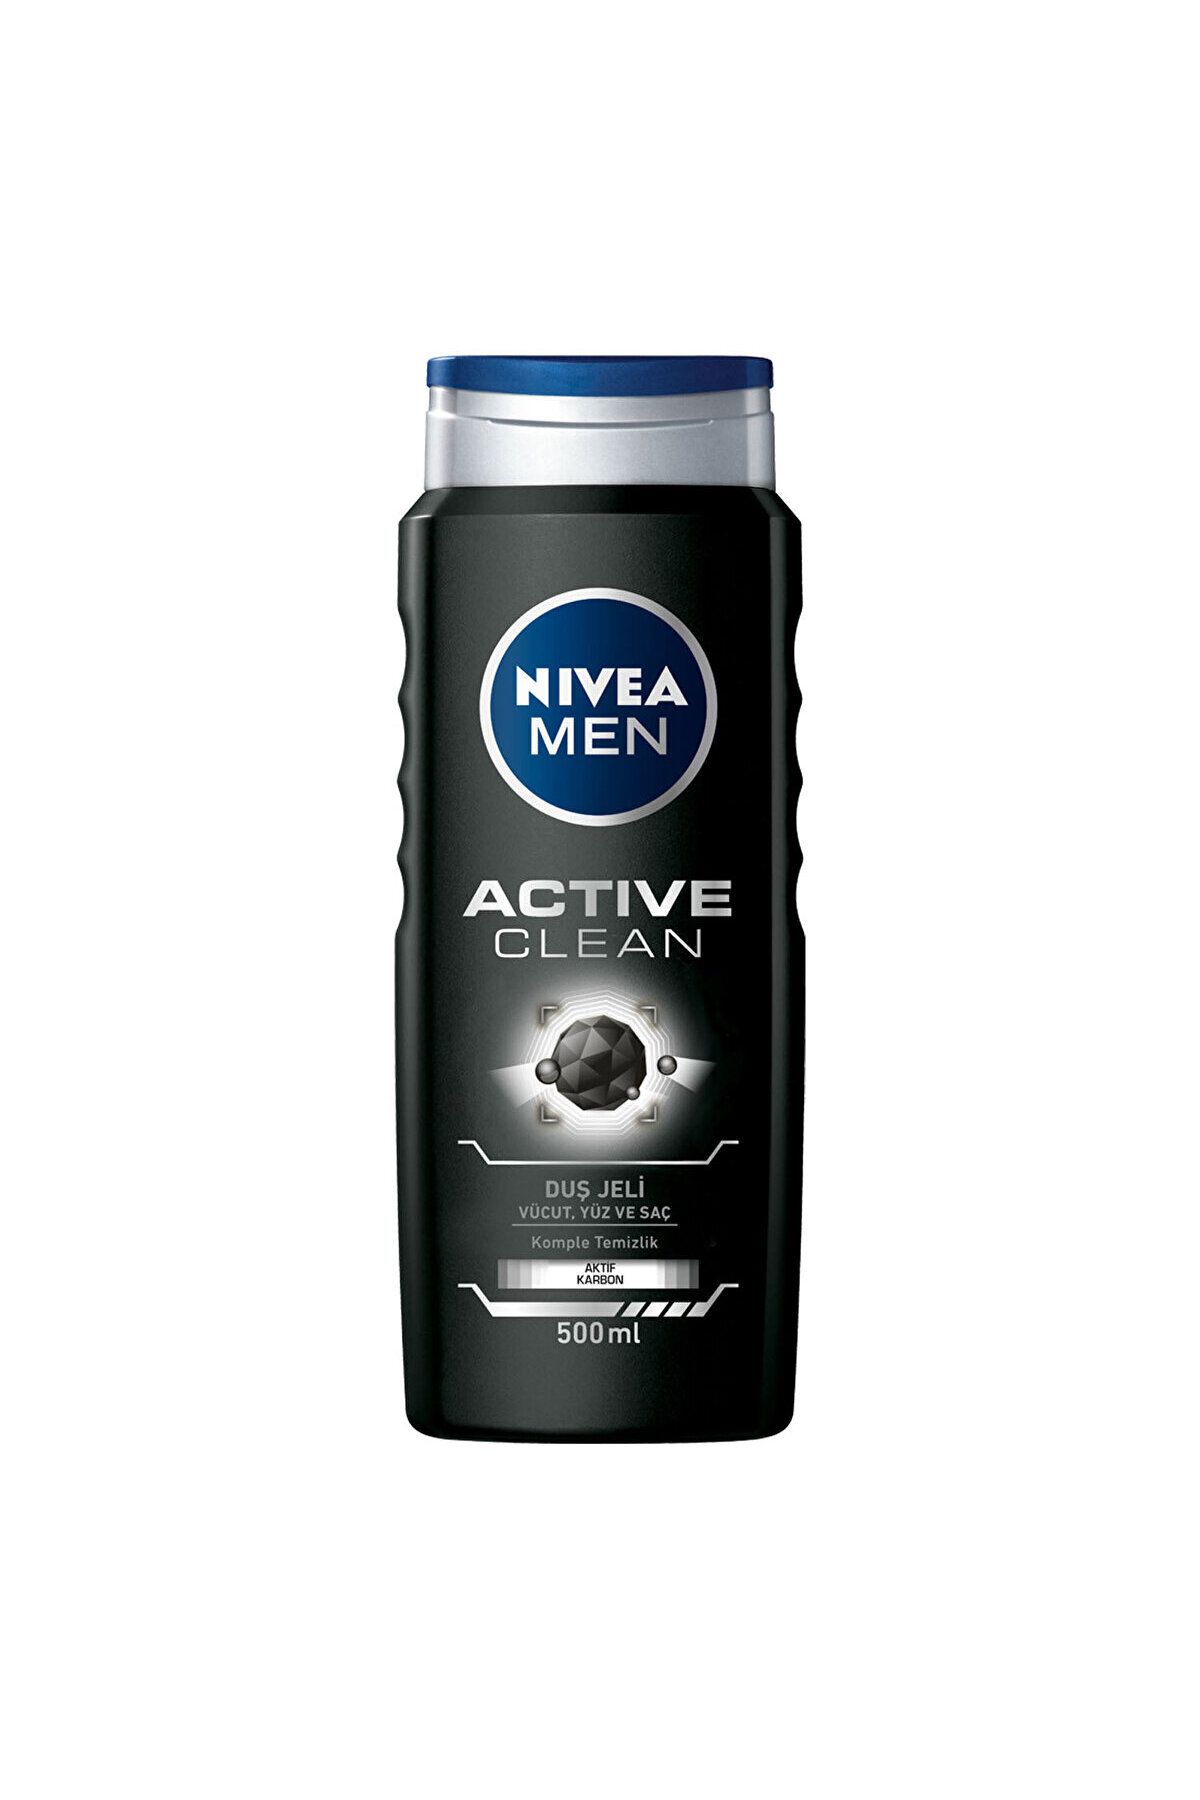 NIVEA Men Active Clean Men's Shower Gel 500 ml DKÜRN681